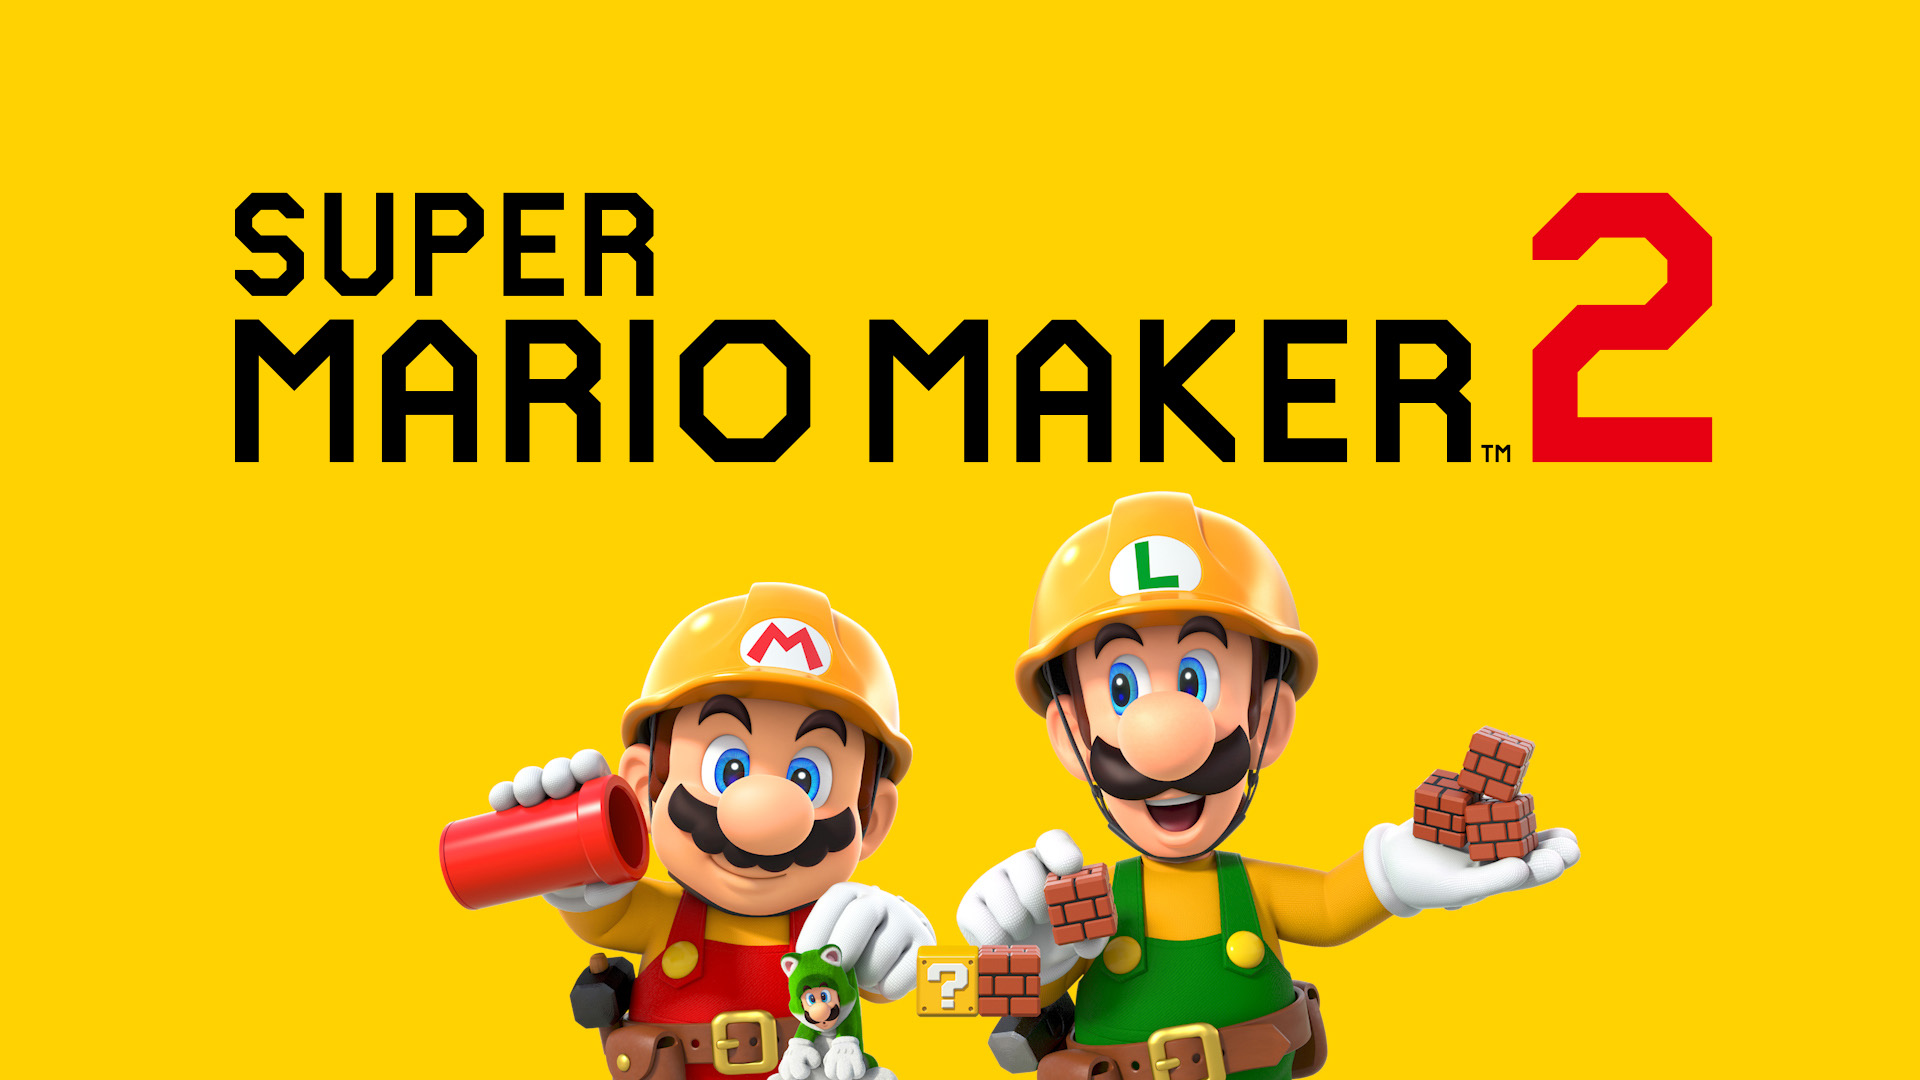 Crea tu propio mundo de Super Mario con la actualización gratuita de Super Mario Maker 2